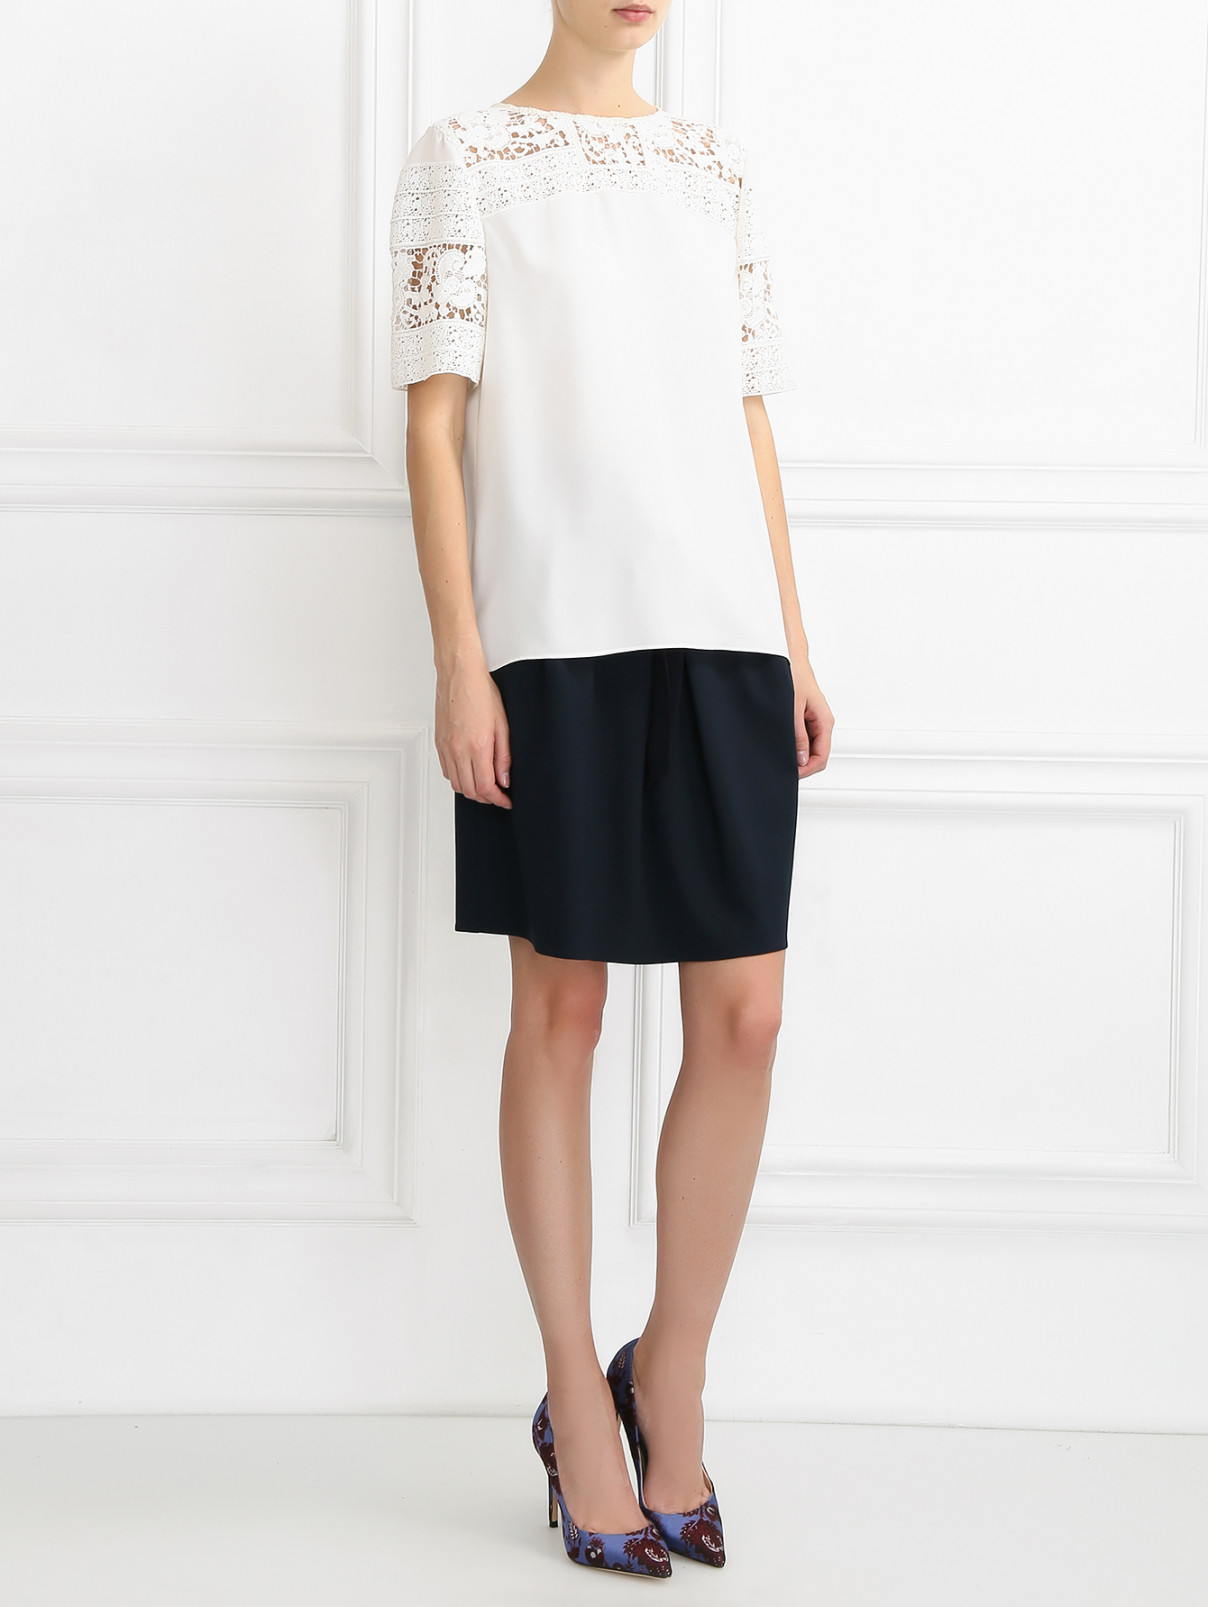 Блузка с кружевной отделкой Armani Jeans  –  Модель Общий вид  – Цвет:  Белый